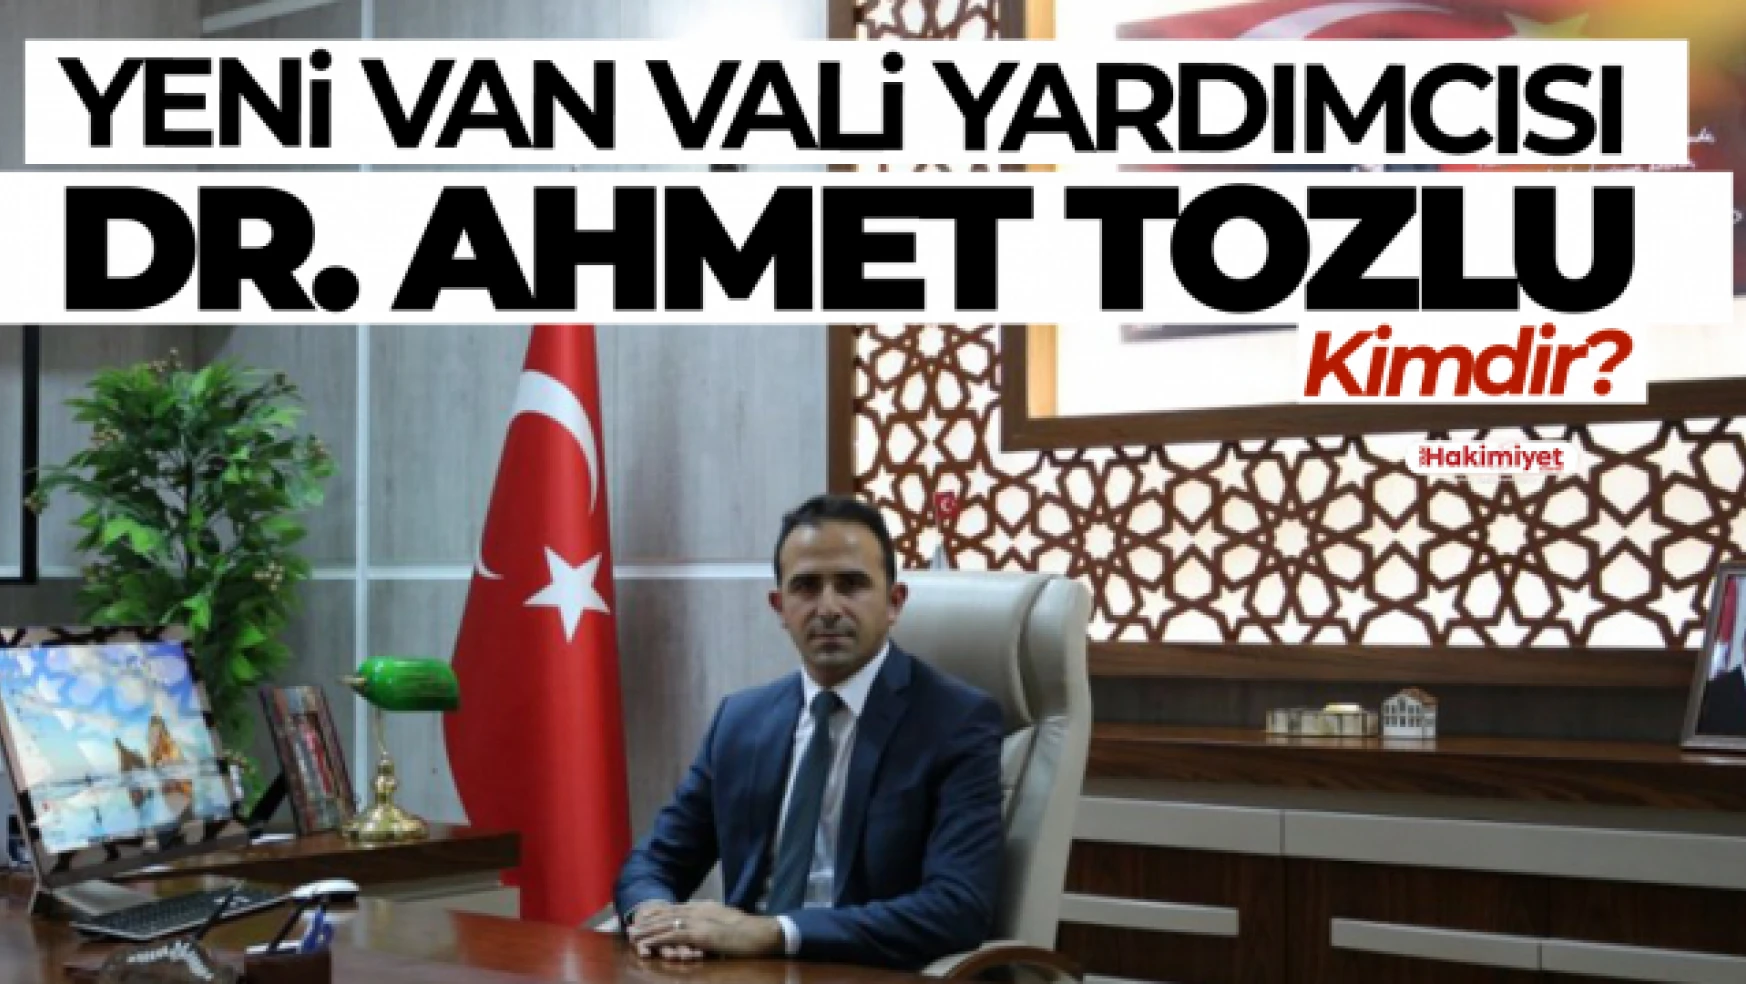 Van Vali Yardımcısı Değişti! Dr. Ahmet Tozlu Kimdir?